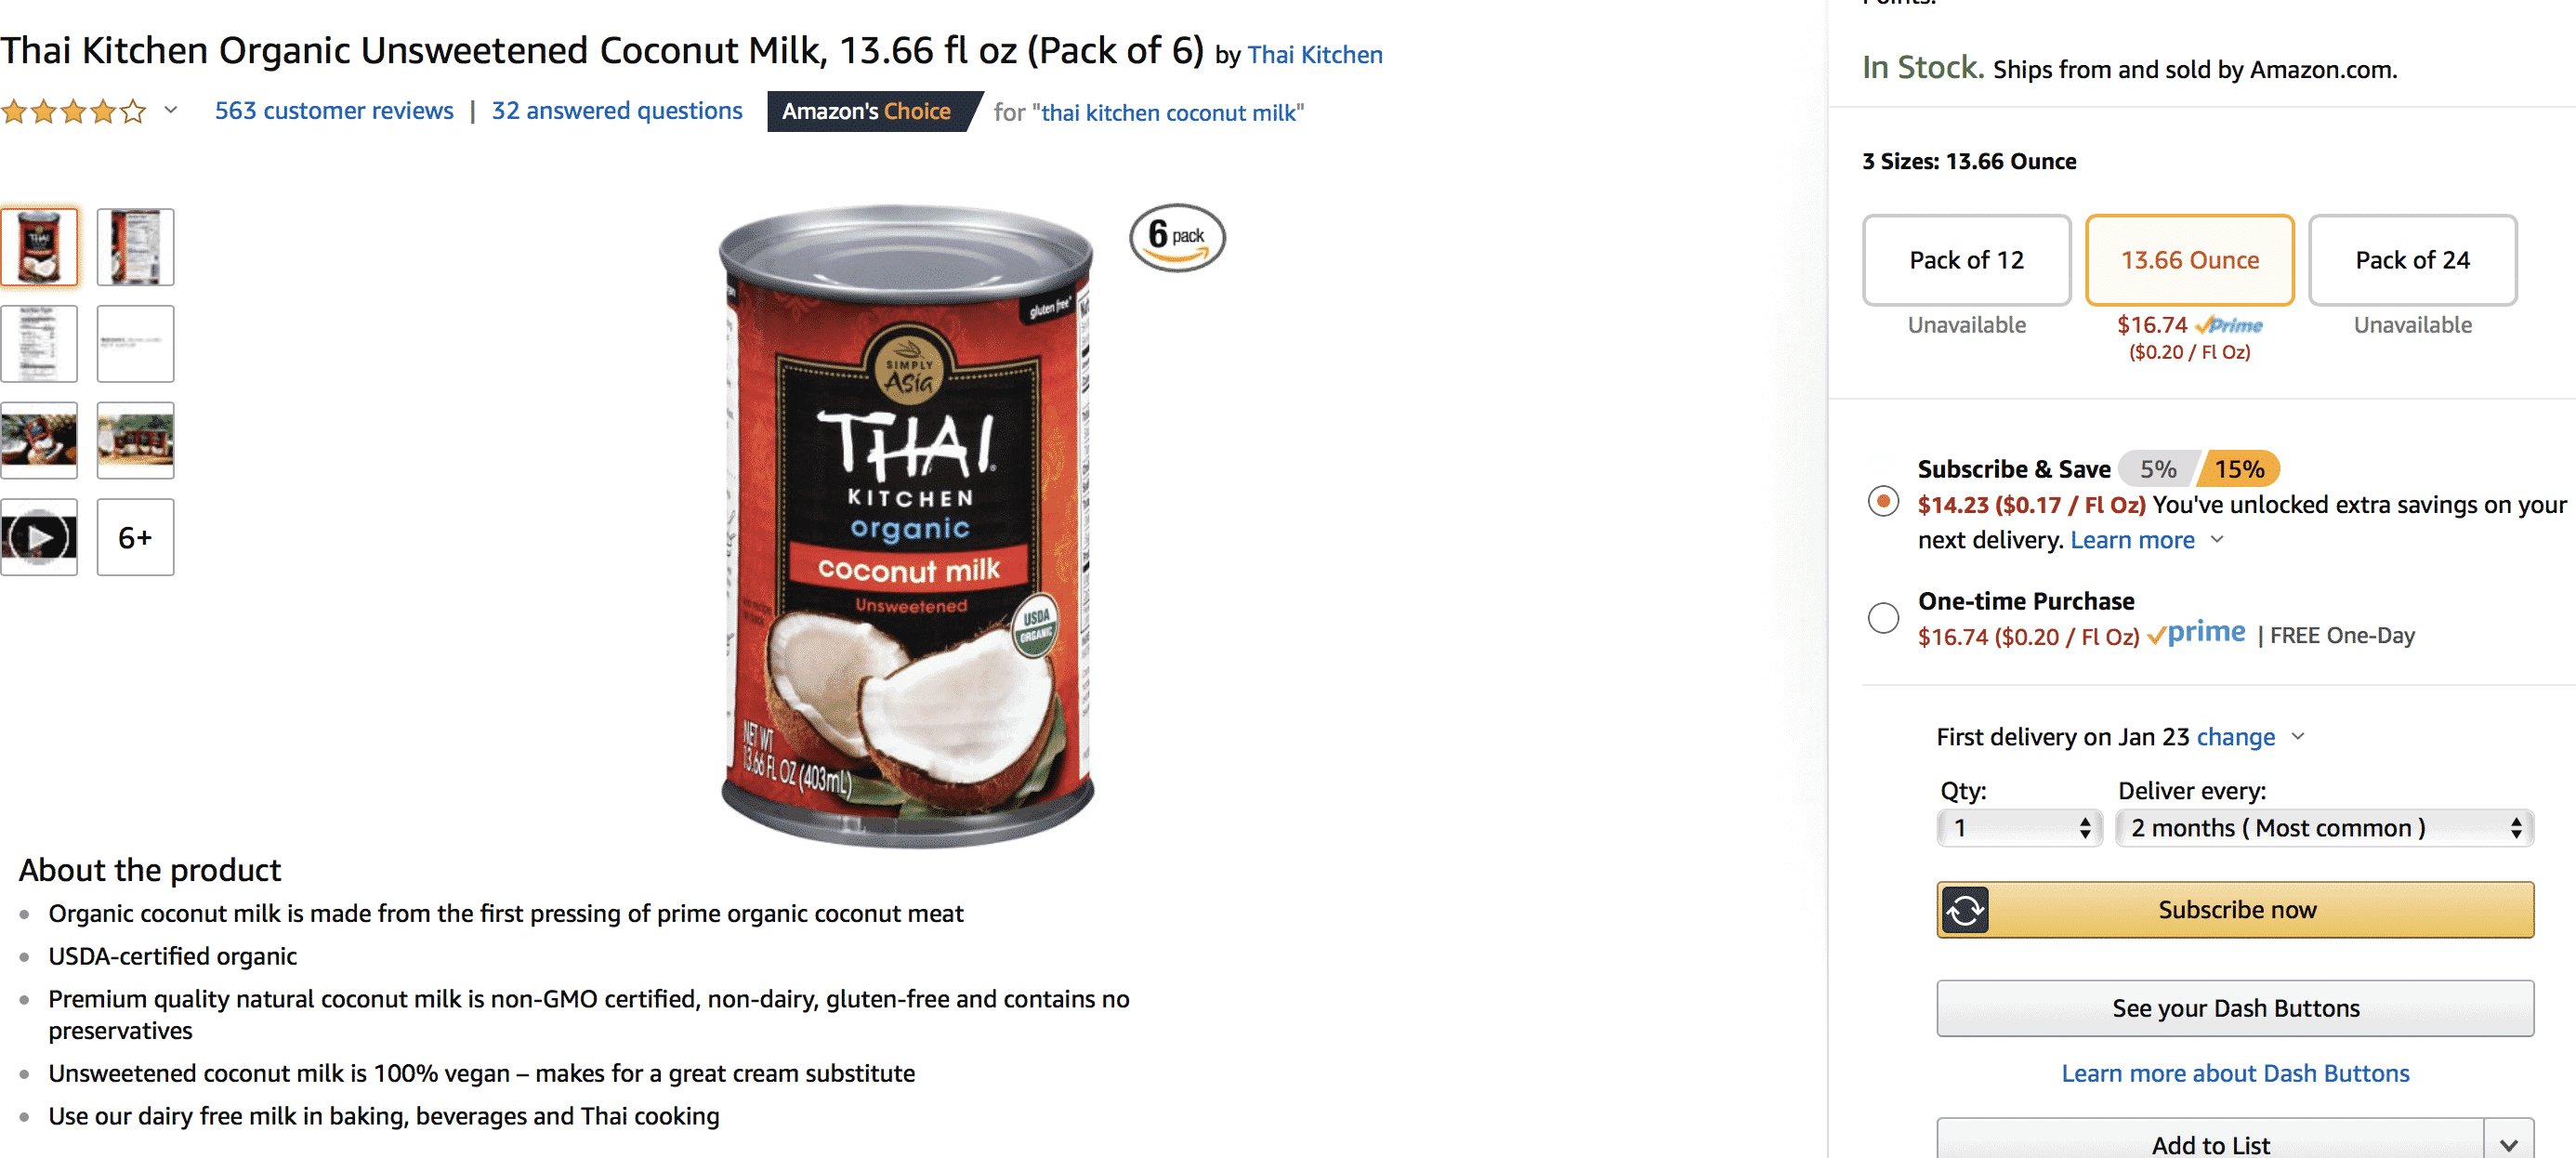 An Image of Thai Kitchen Coconut Milk on Amazon